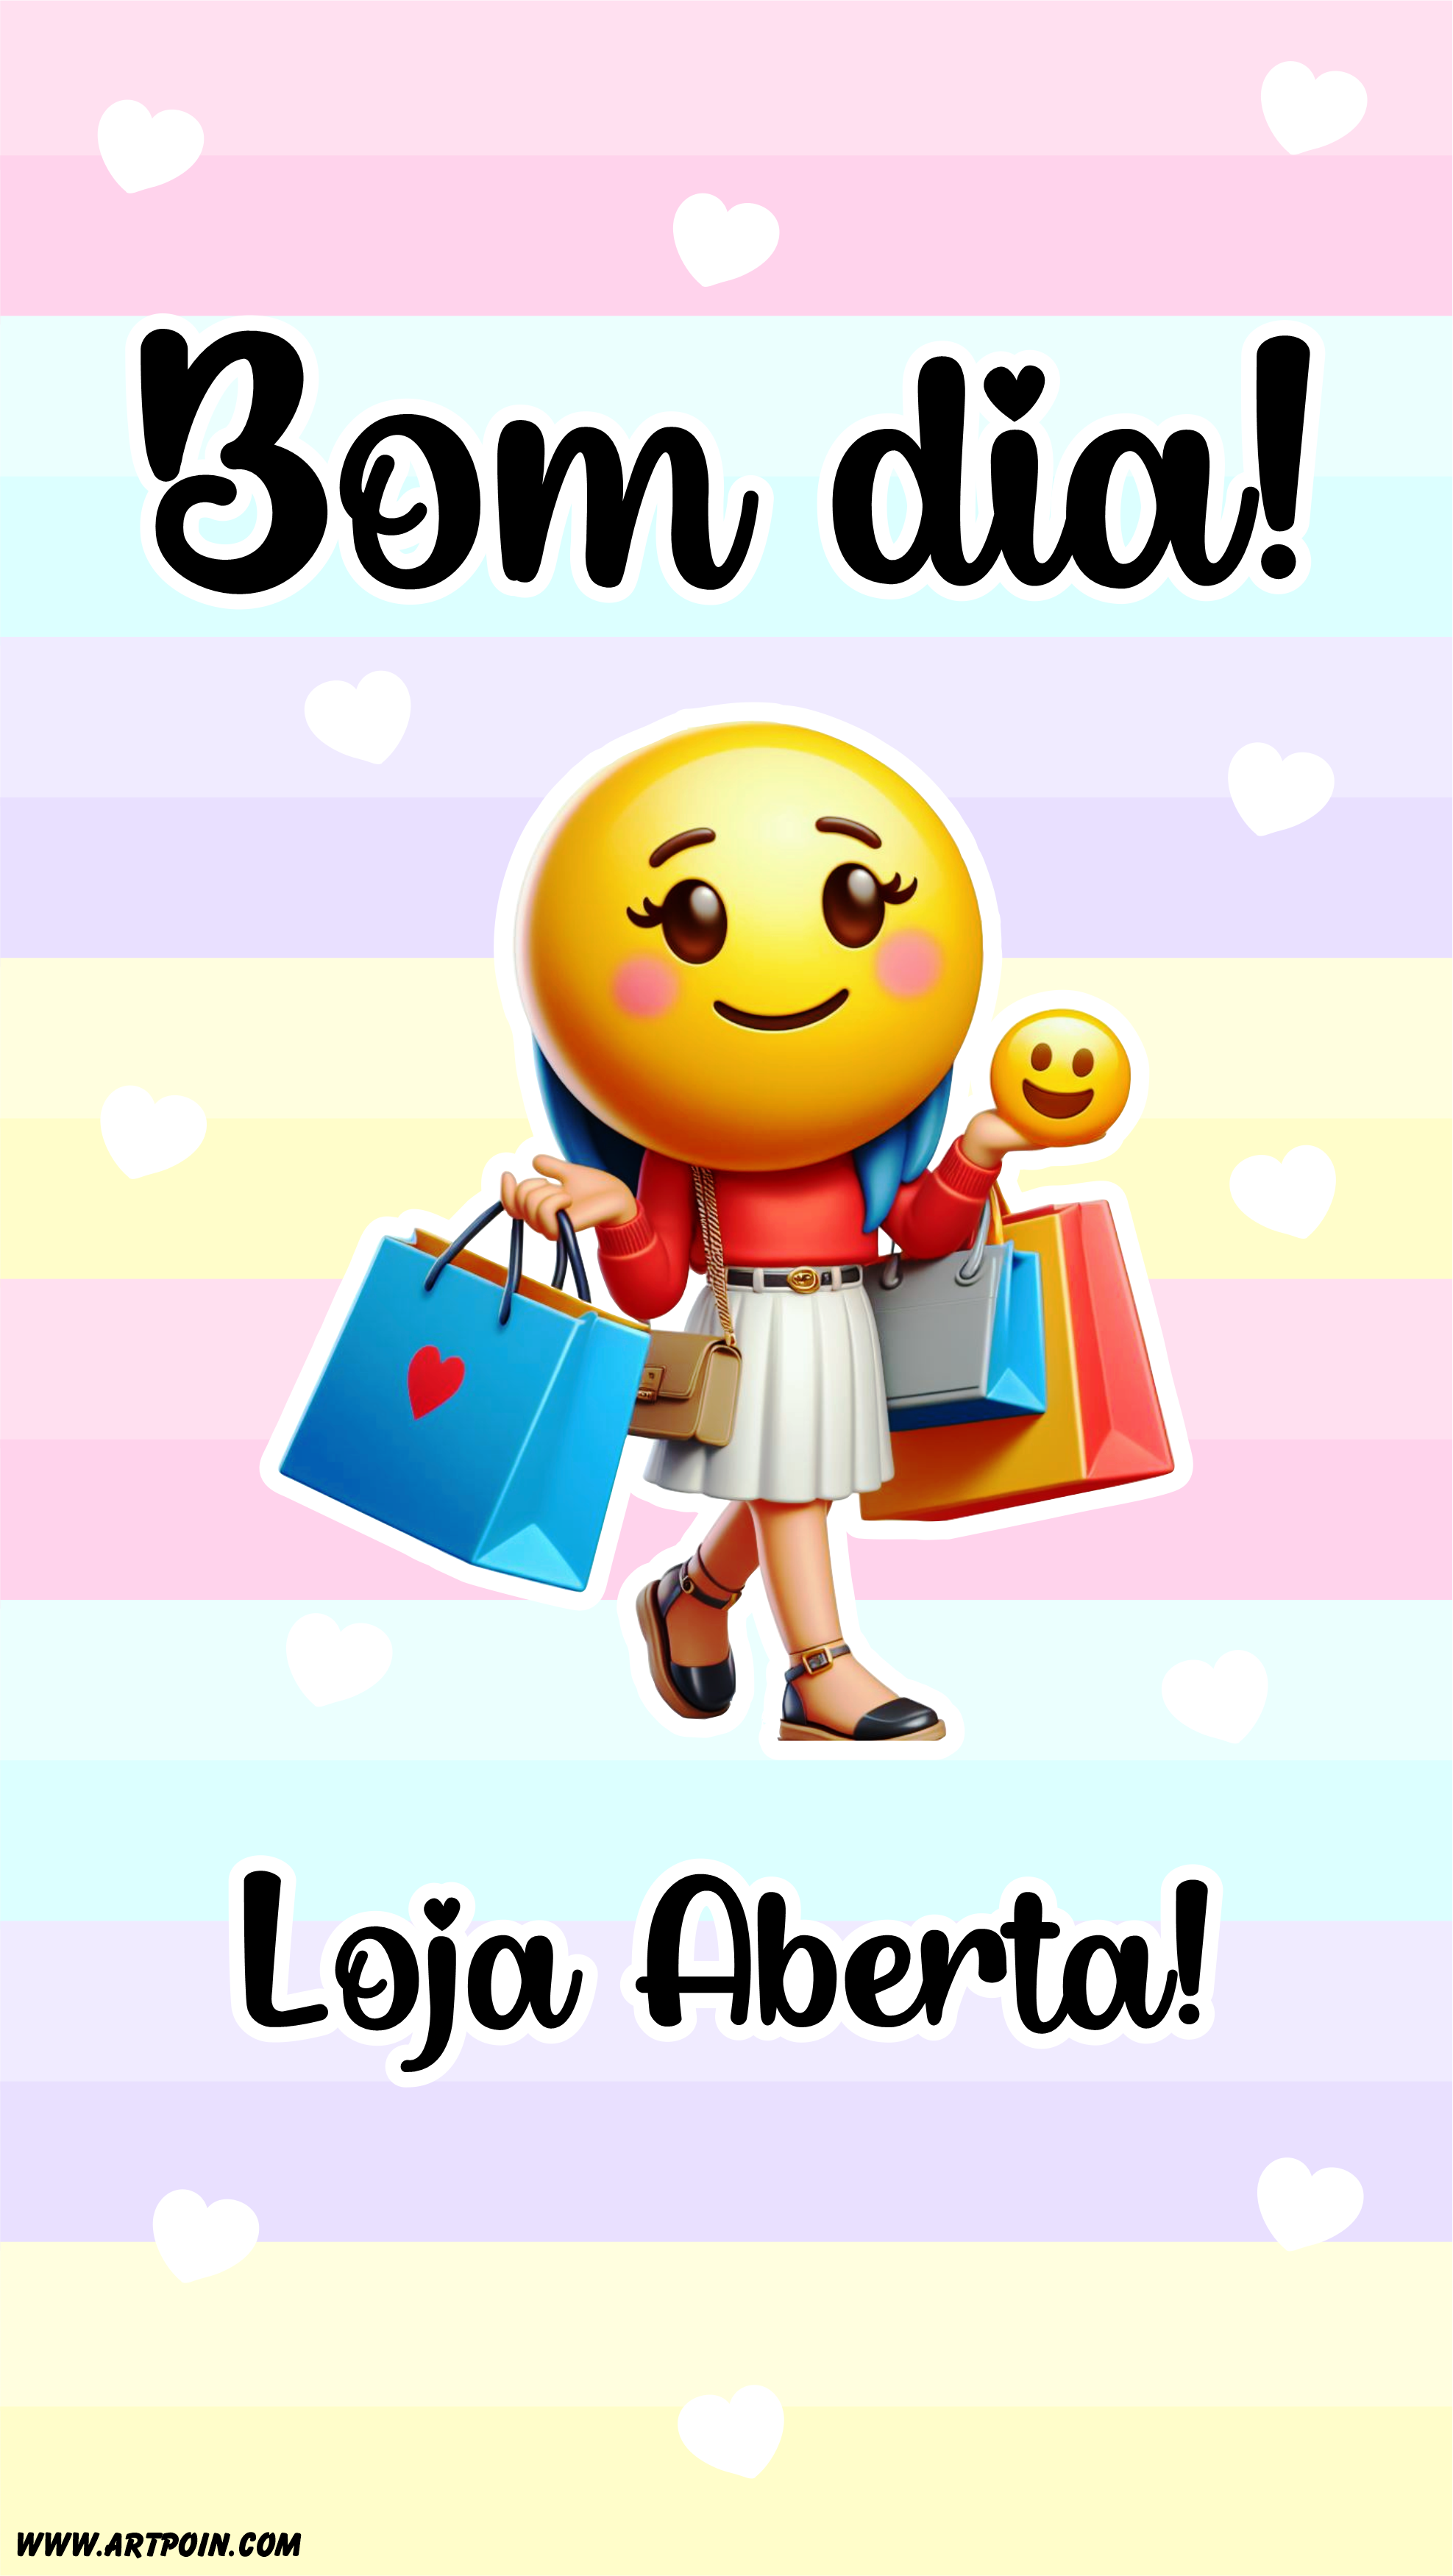 Arte para lojinha online Bom dia loja aberta emojis compras shopping free designer png